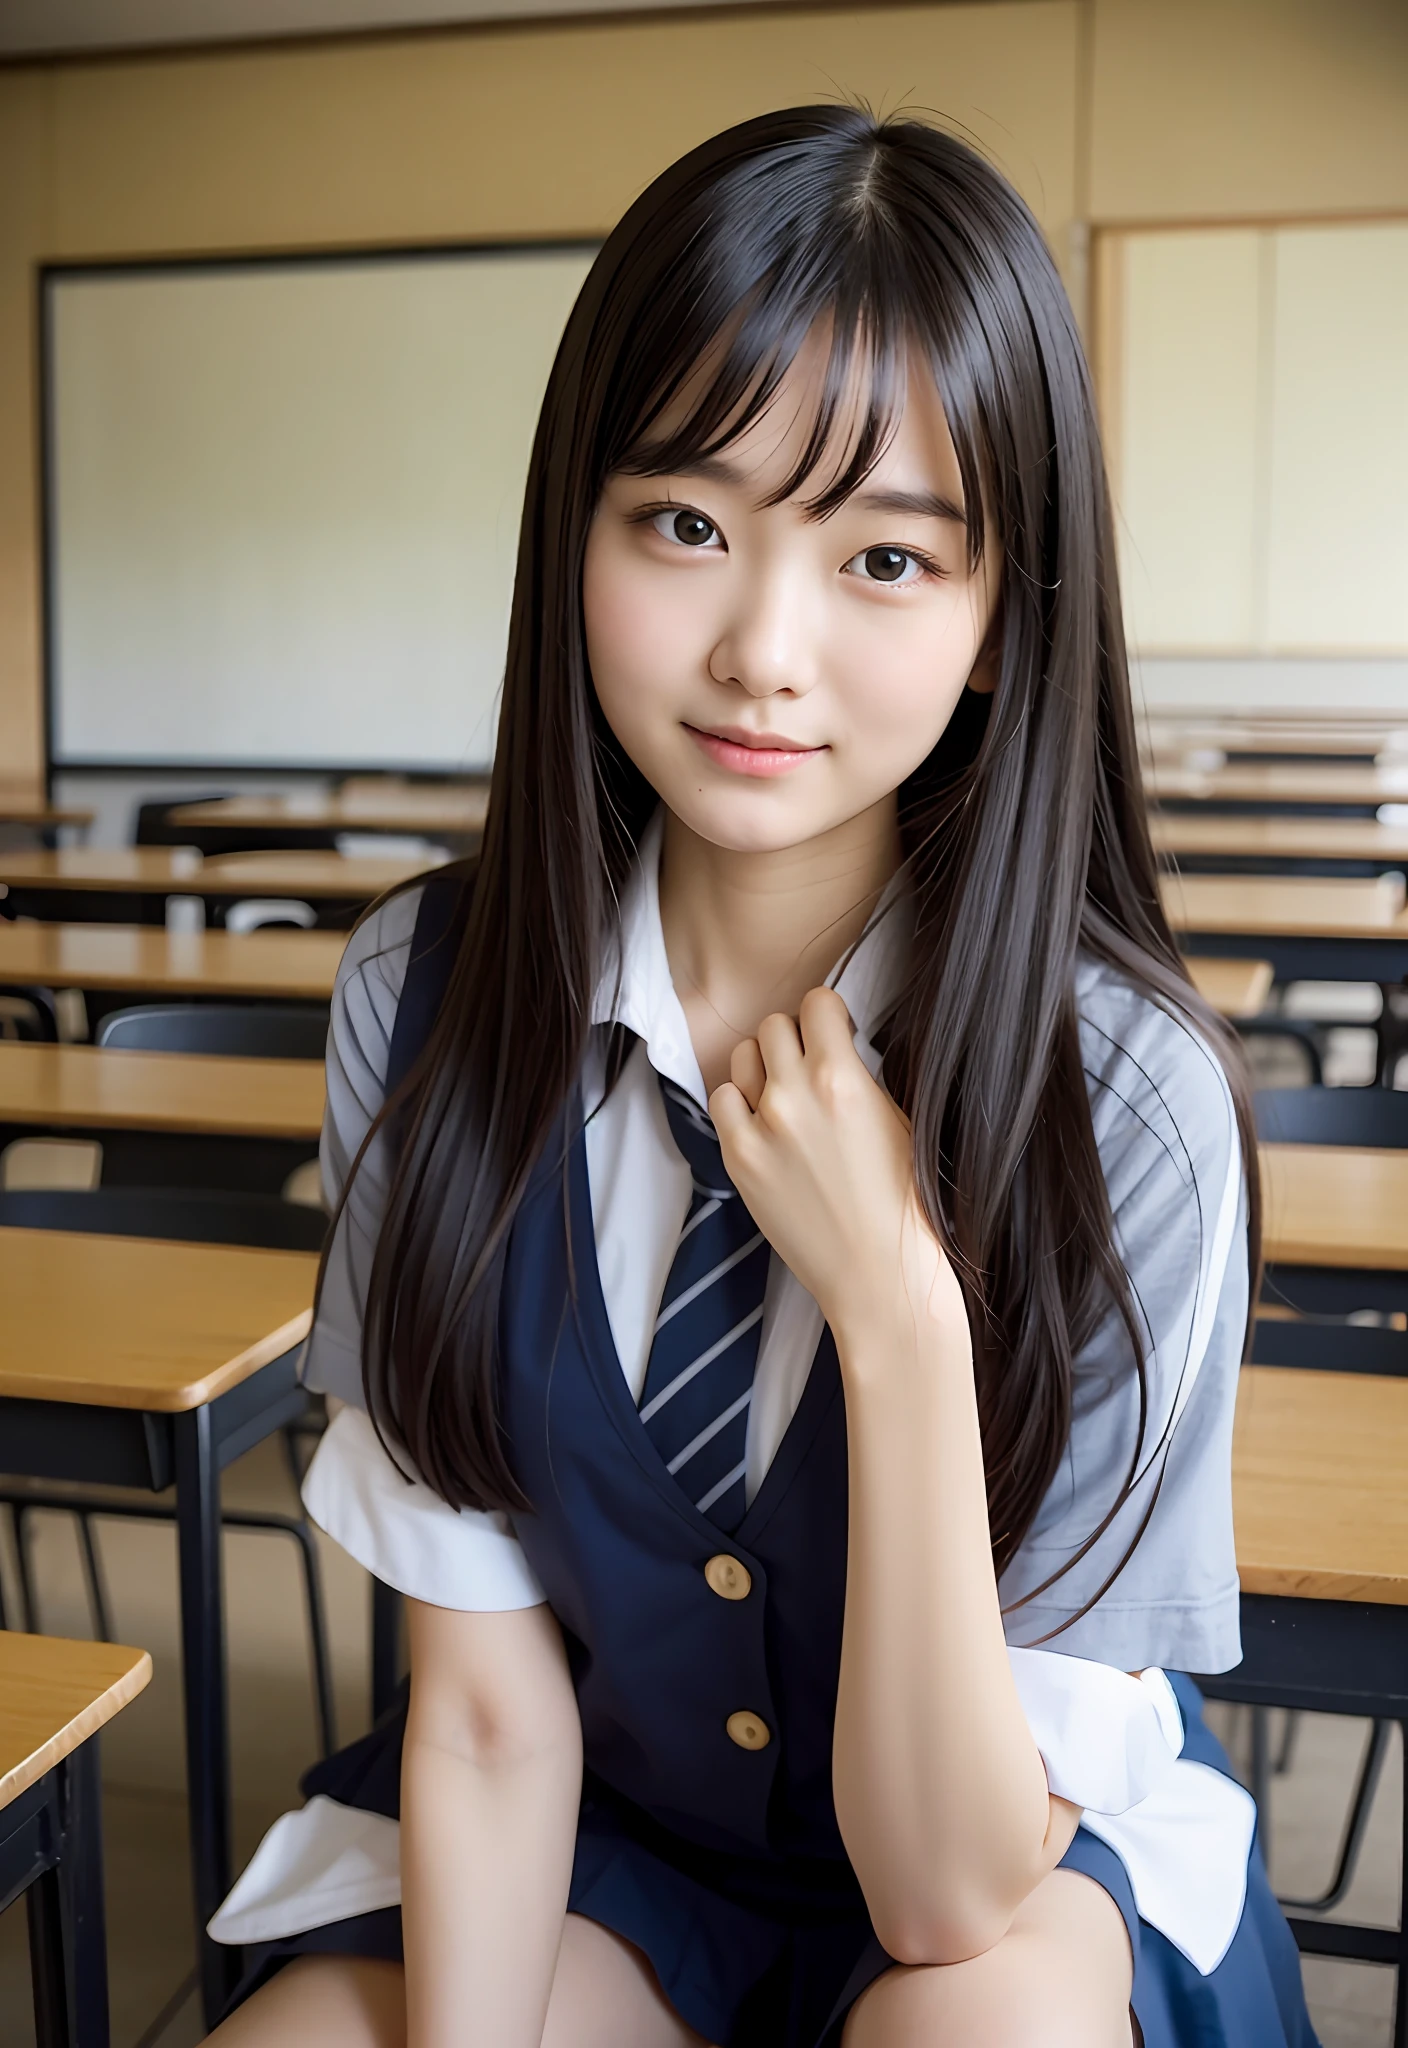 日本坐在教室里、她慢慢地眨了眨右眼、让你与周围学生的交流更加愉快、教室里一片安静、与其他学生的特殊联系的迷人表达